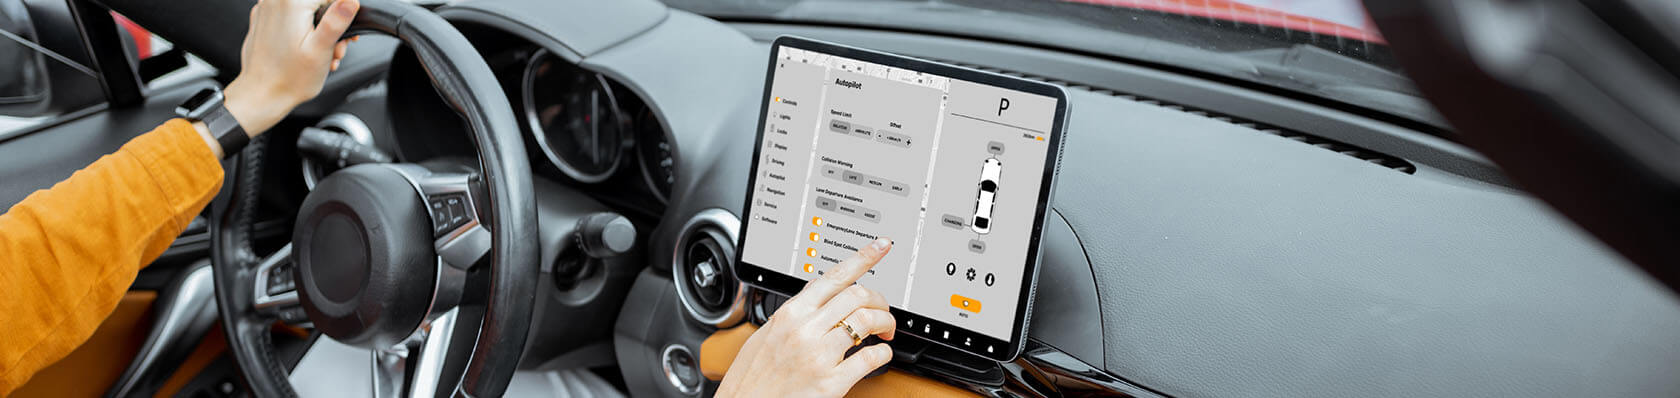 Les 7 meilleurs supports tablette voiture 2022 – support tablette voiture test & comparatif